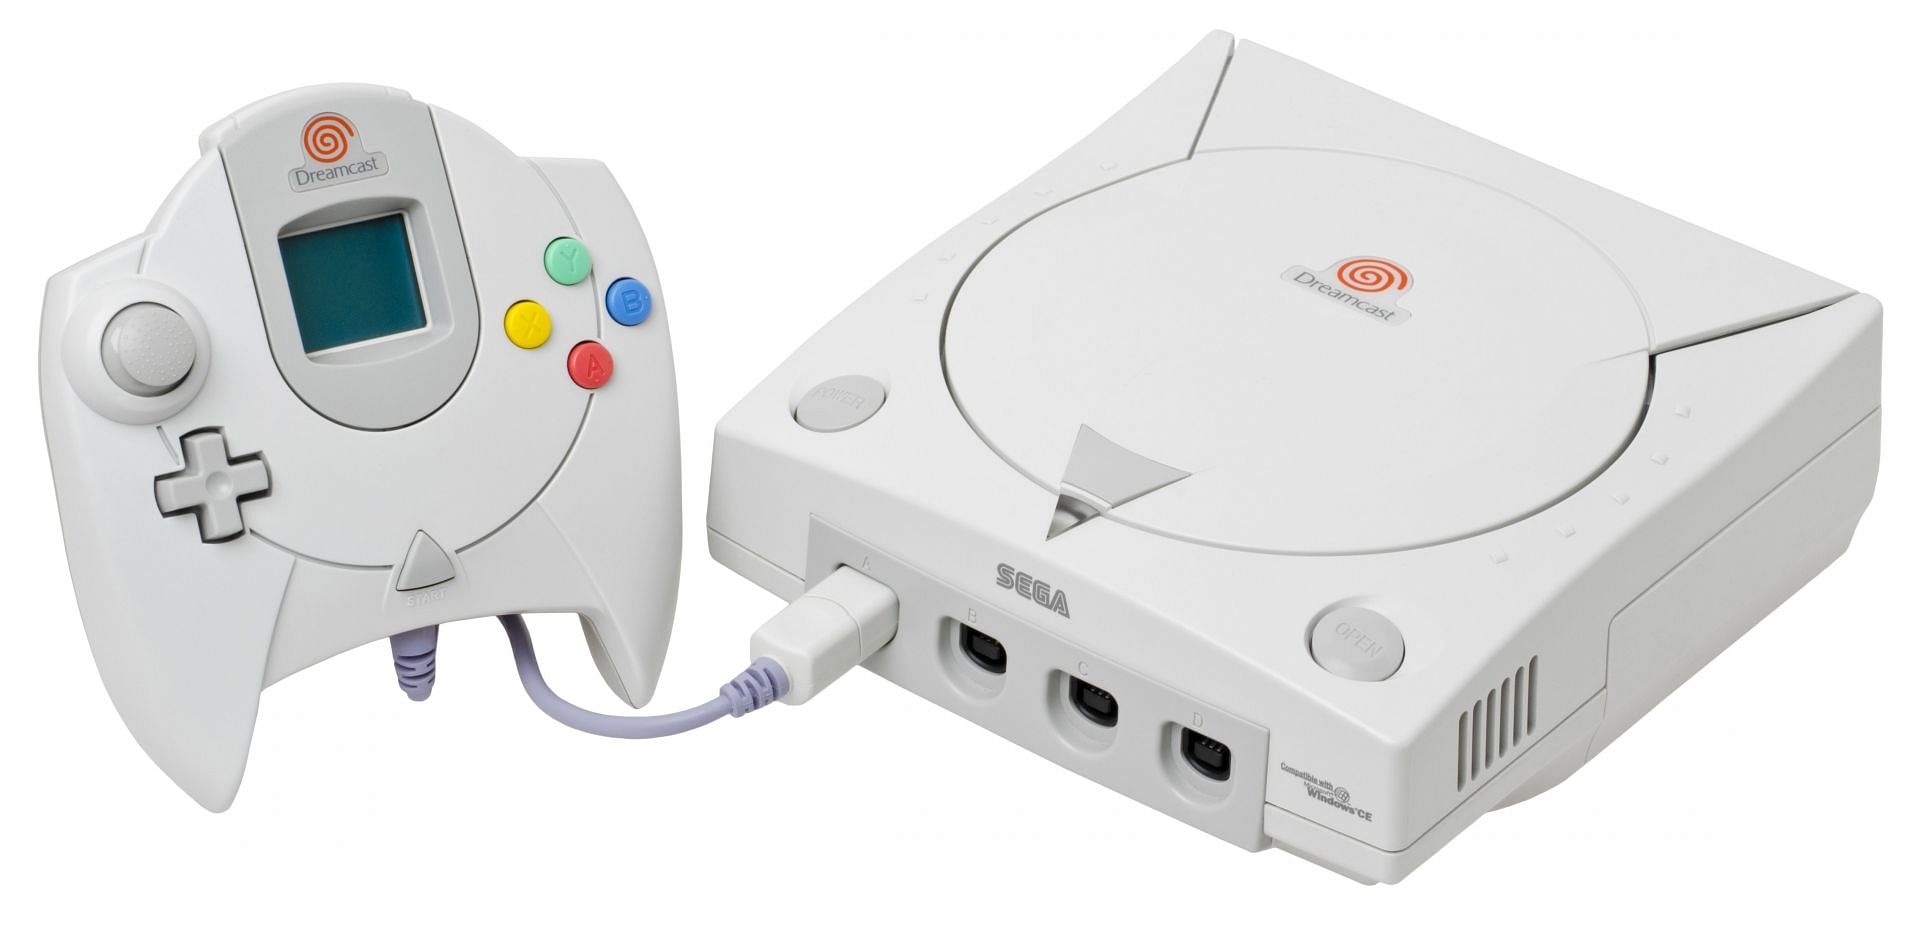 Sega Dreamcast (Image by Sega)